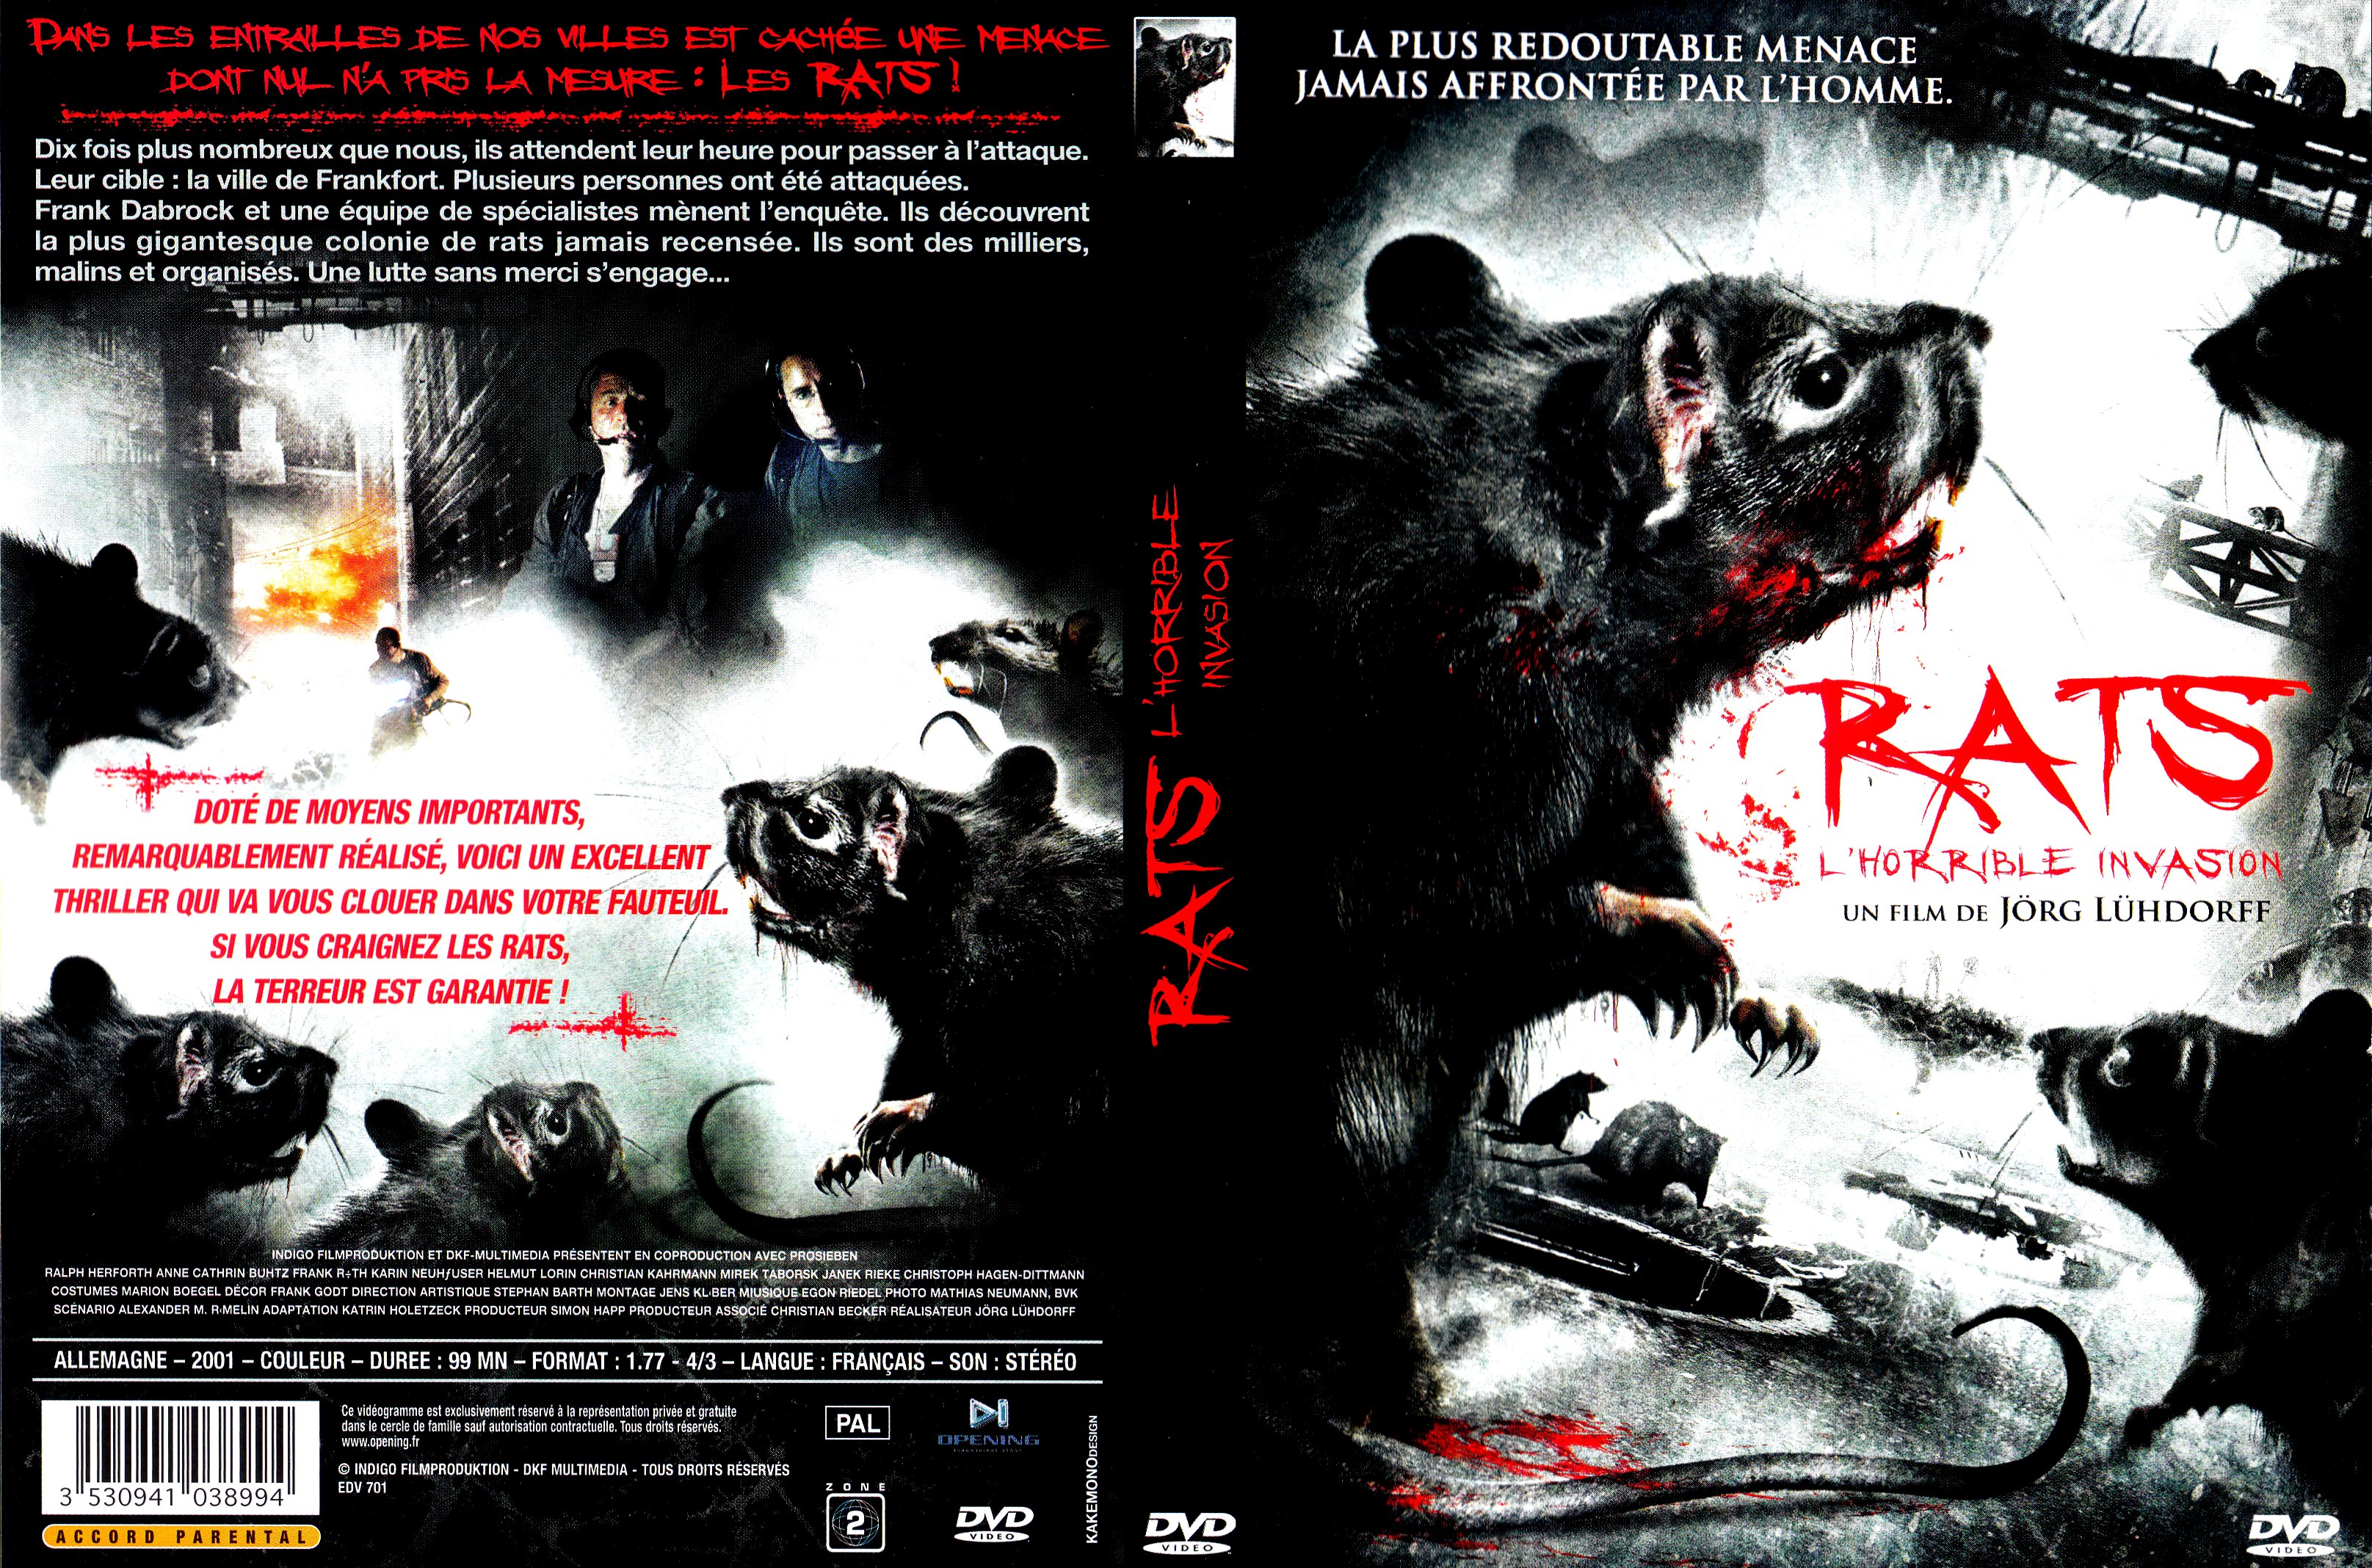 Jaquette DVD Rats (1981) v2